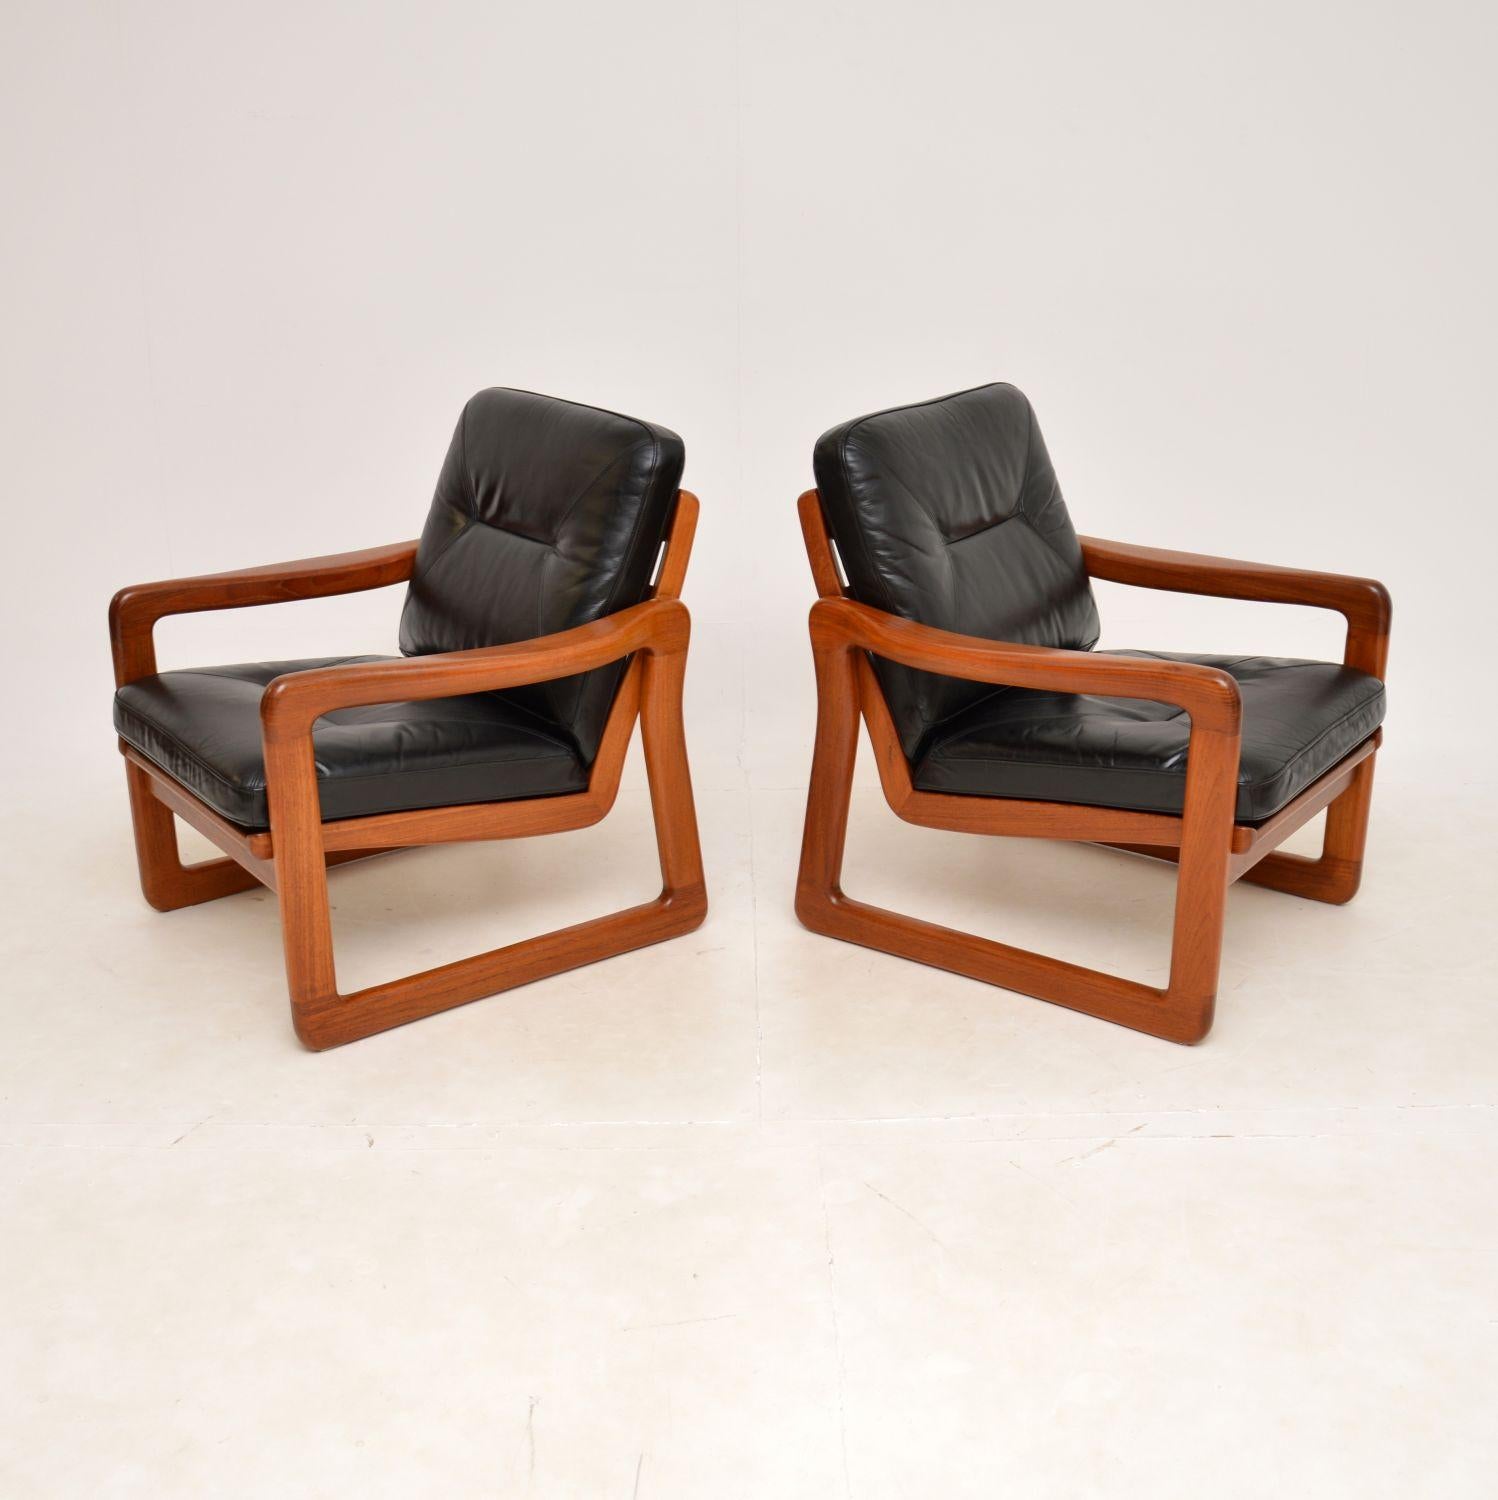 Ein sehr stilvolles und äußerst bequemes Paar dänischer Vintage-Sessel aus Teakholz und Leder. Sie wurden kürzlich aus Dänemark importiert und stammen aus den 1970er Jahren.

Die Qualität ist hervorragend, die massiven Teakholzrahmen sind sehr